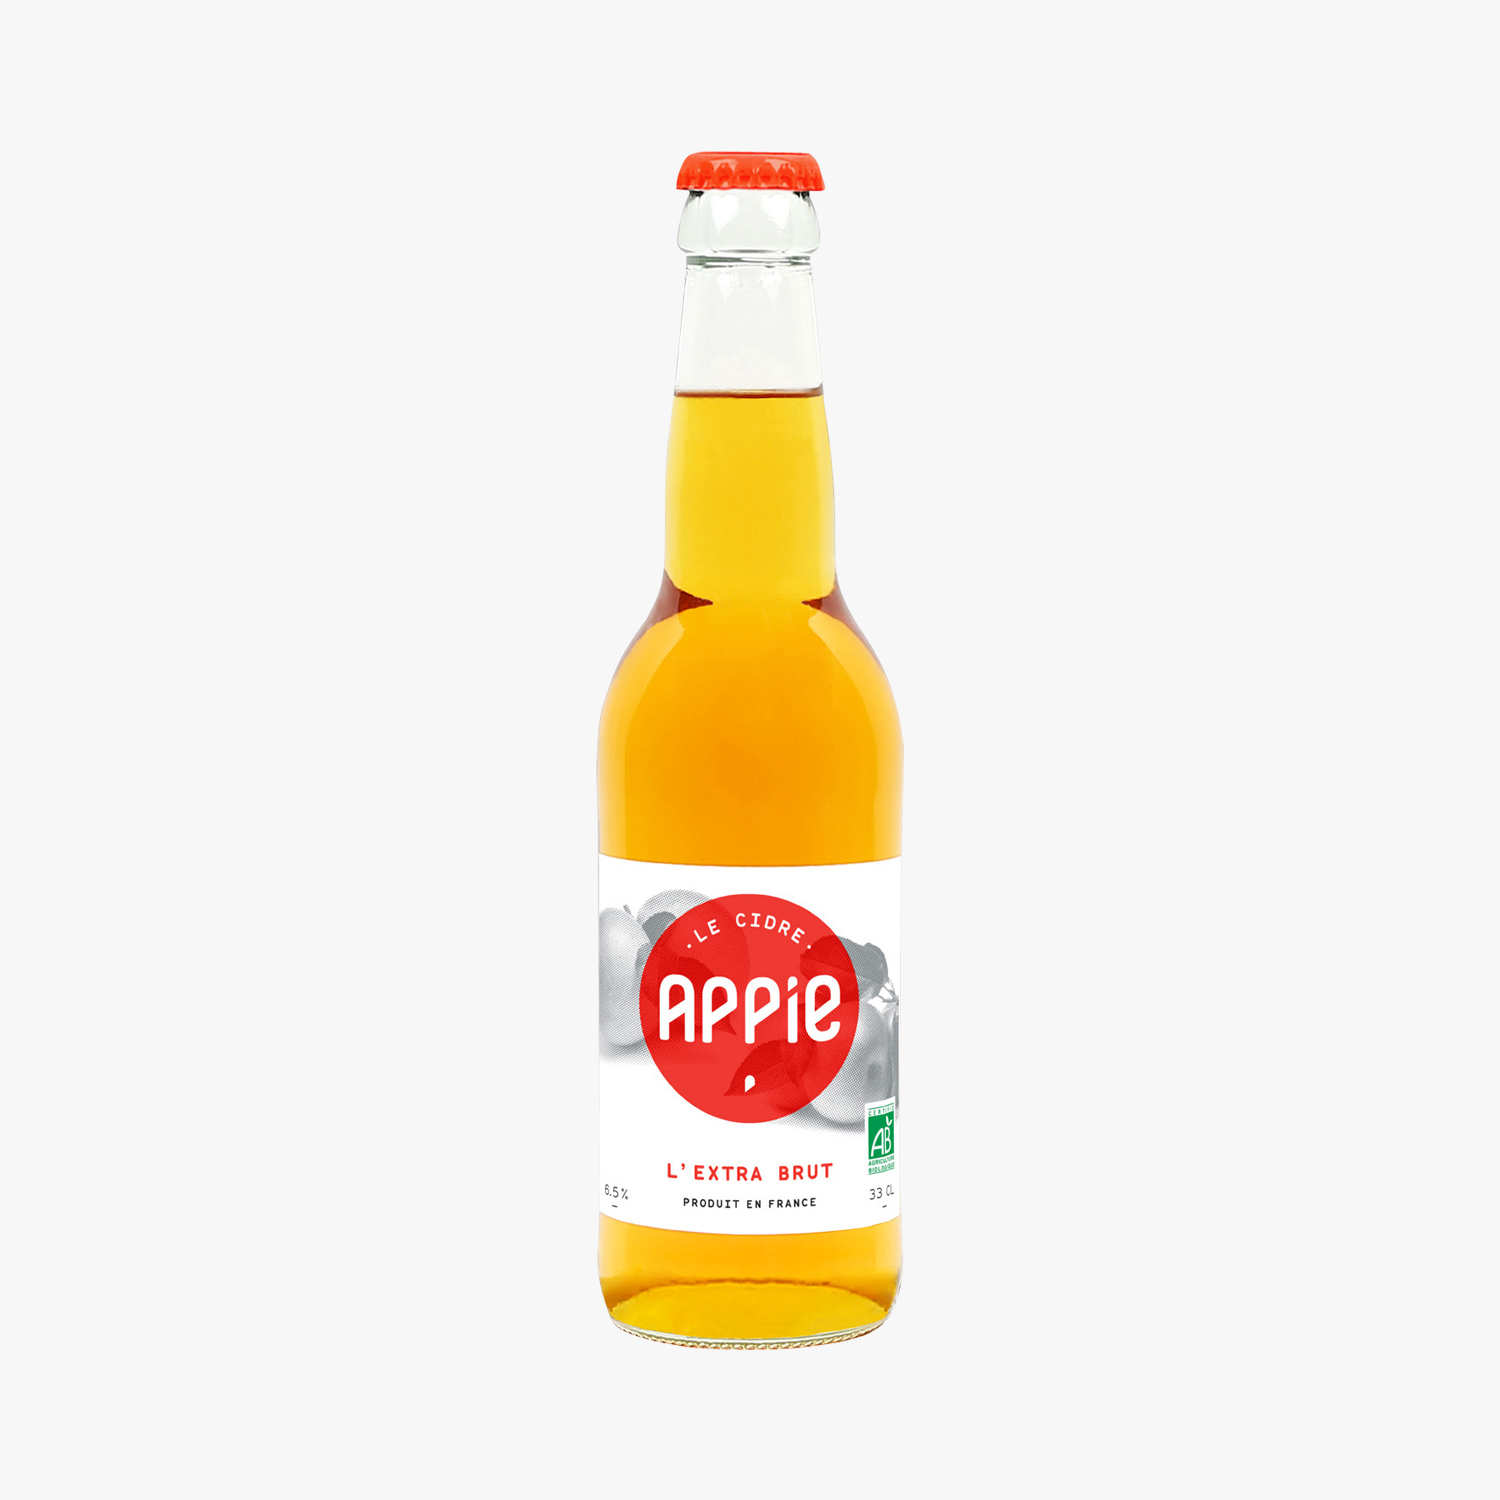 Appie le cidre “L’EXTRA BRUT” /Appie  “L’EXTRA BRUT” 水果酒/6.5% 33cl